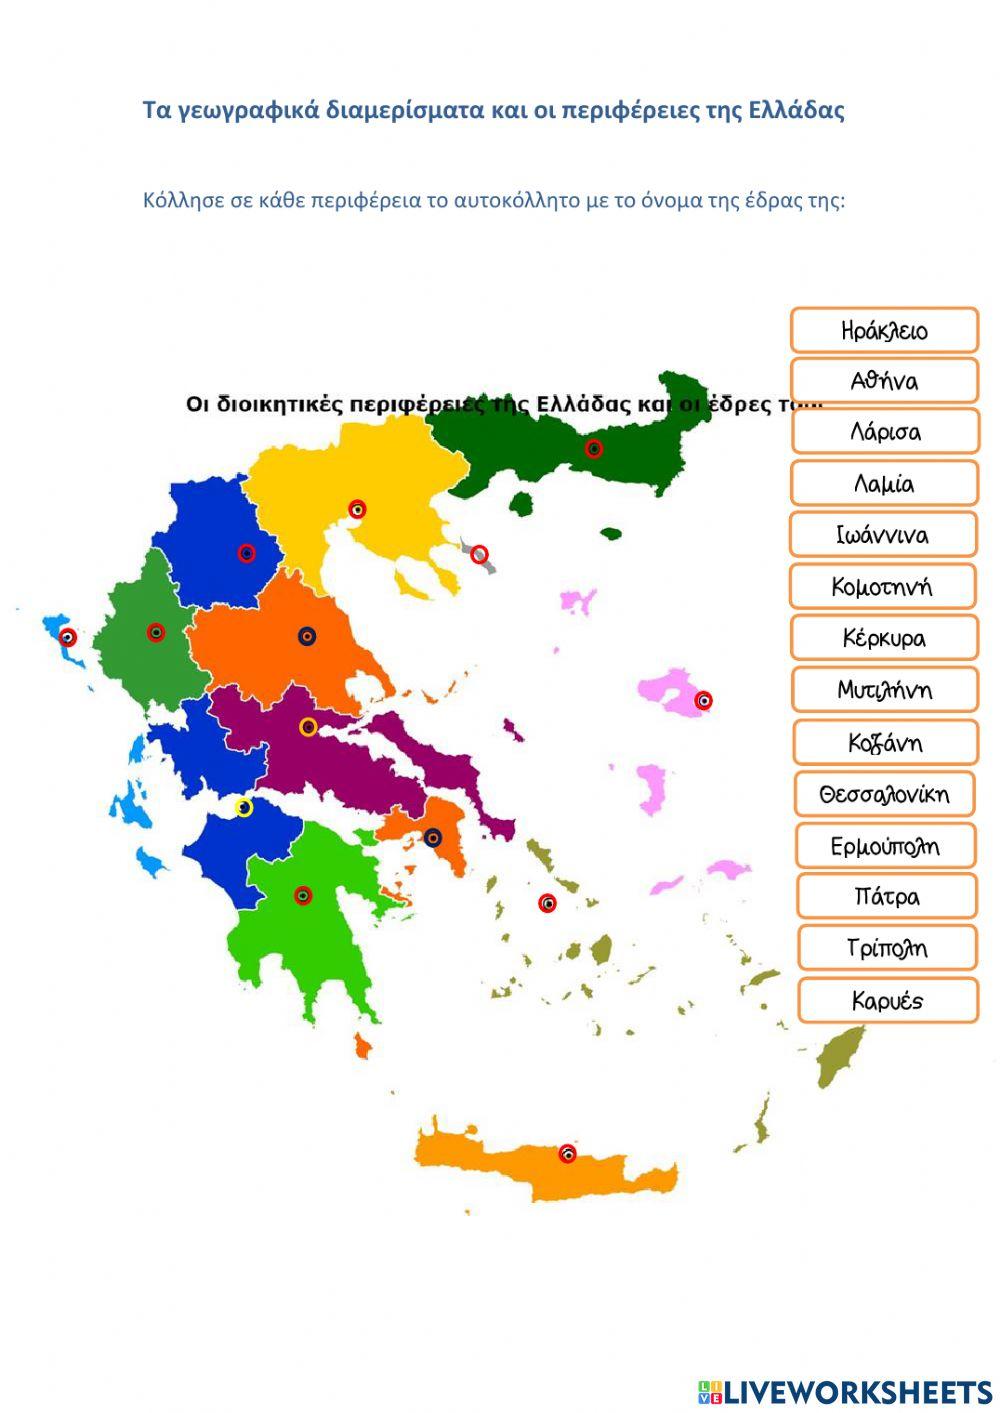 34. Τα γεωγραφικά διαμερίσματα και οι περιφέρειες της Ελλάδας